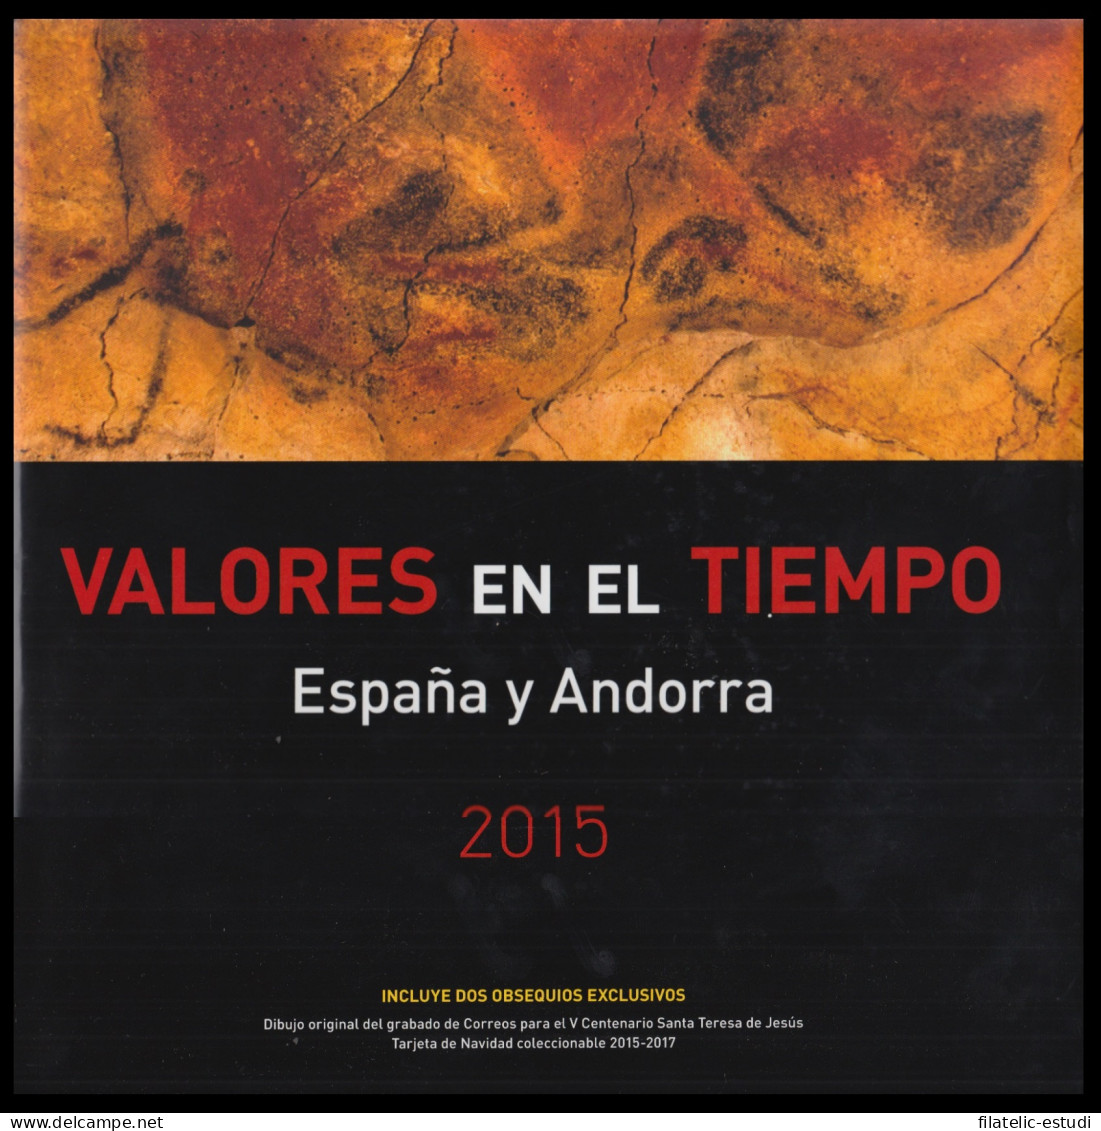 Libro Album Oficial De Sellos España Y Andorra  2015 - Emissioni Repubblicane